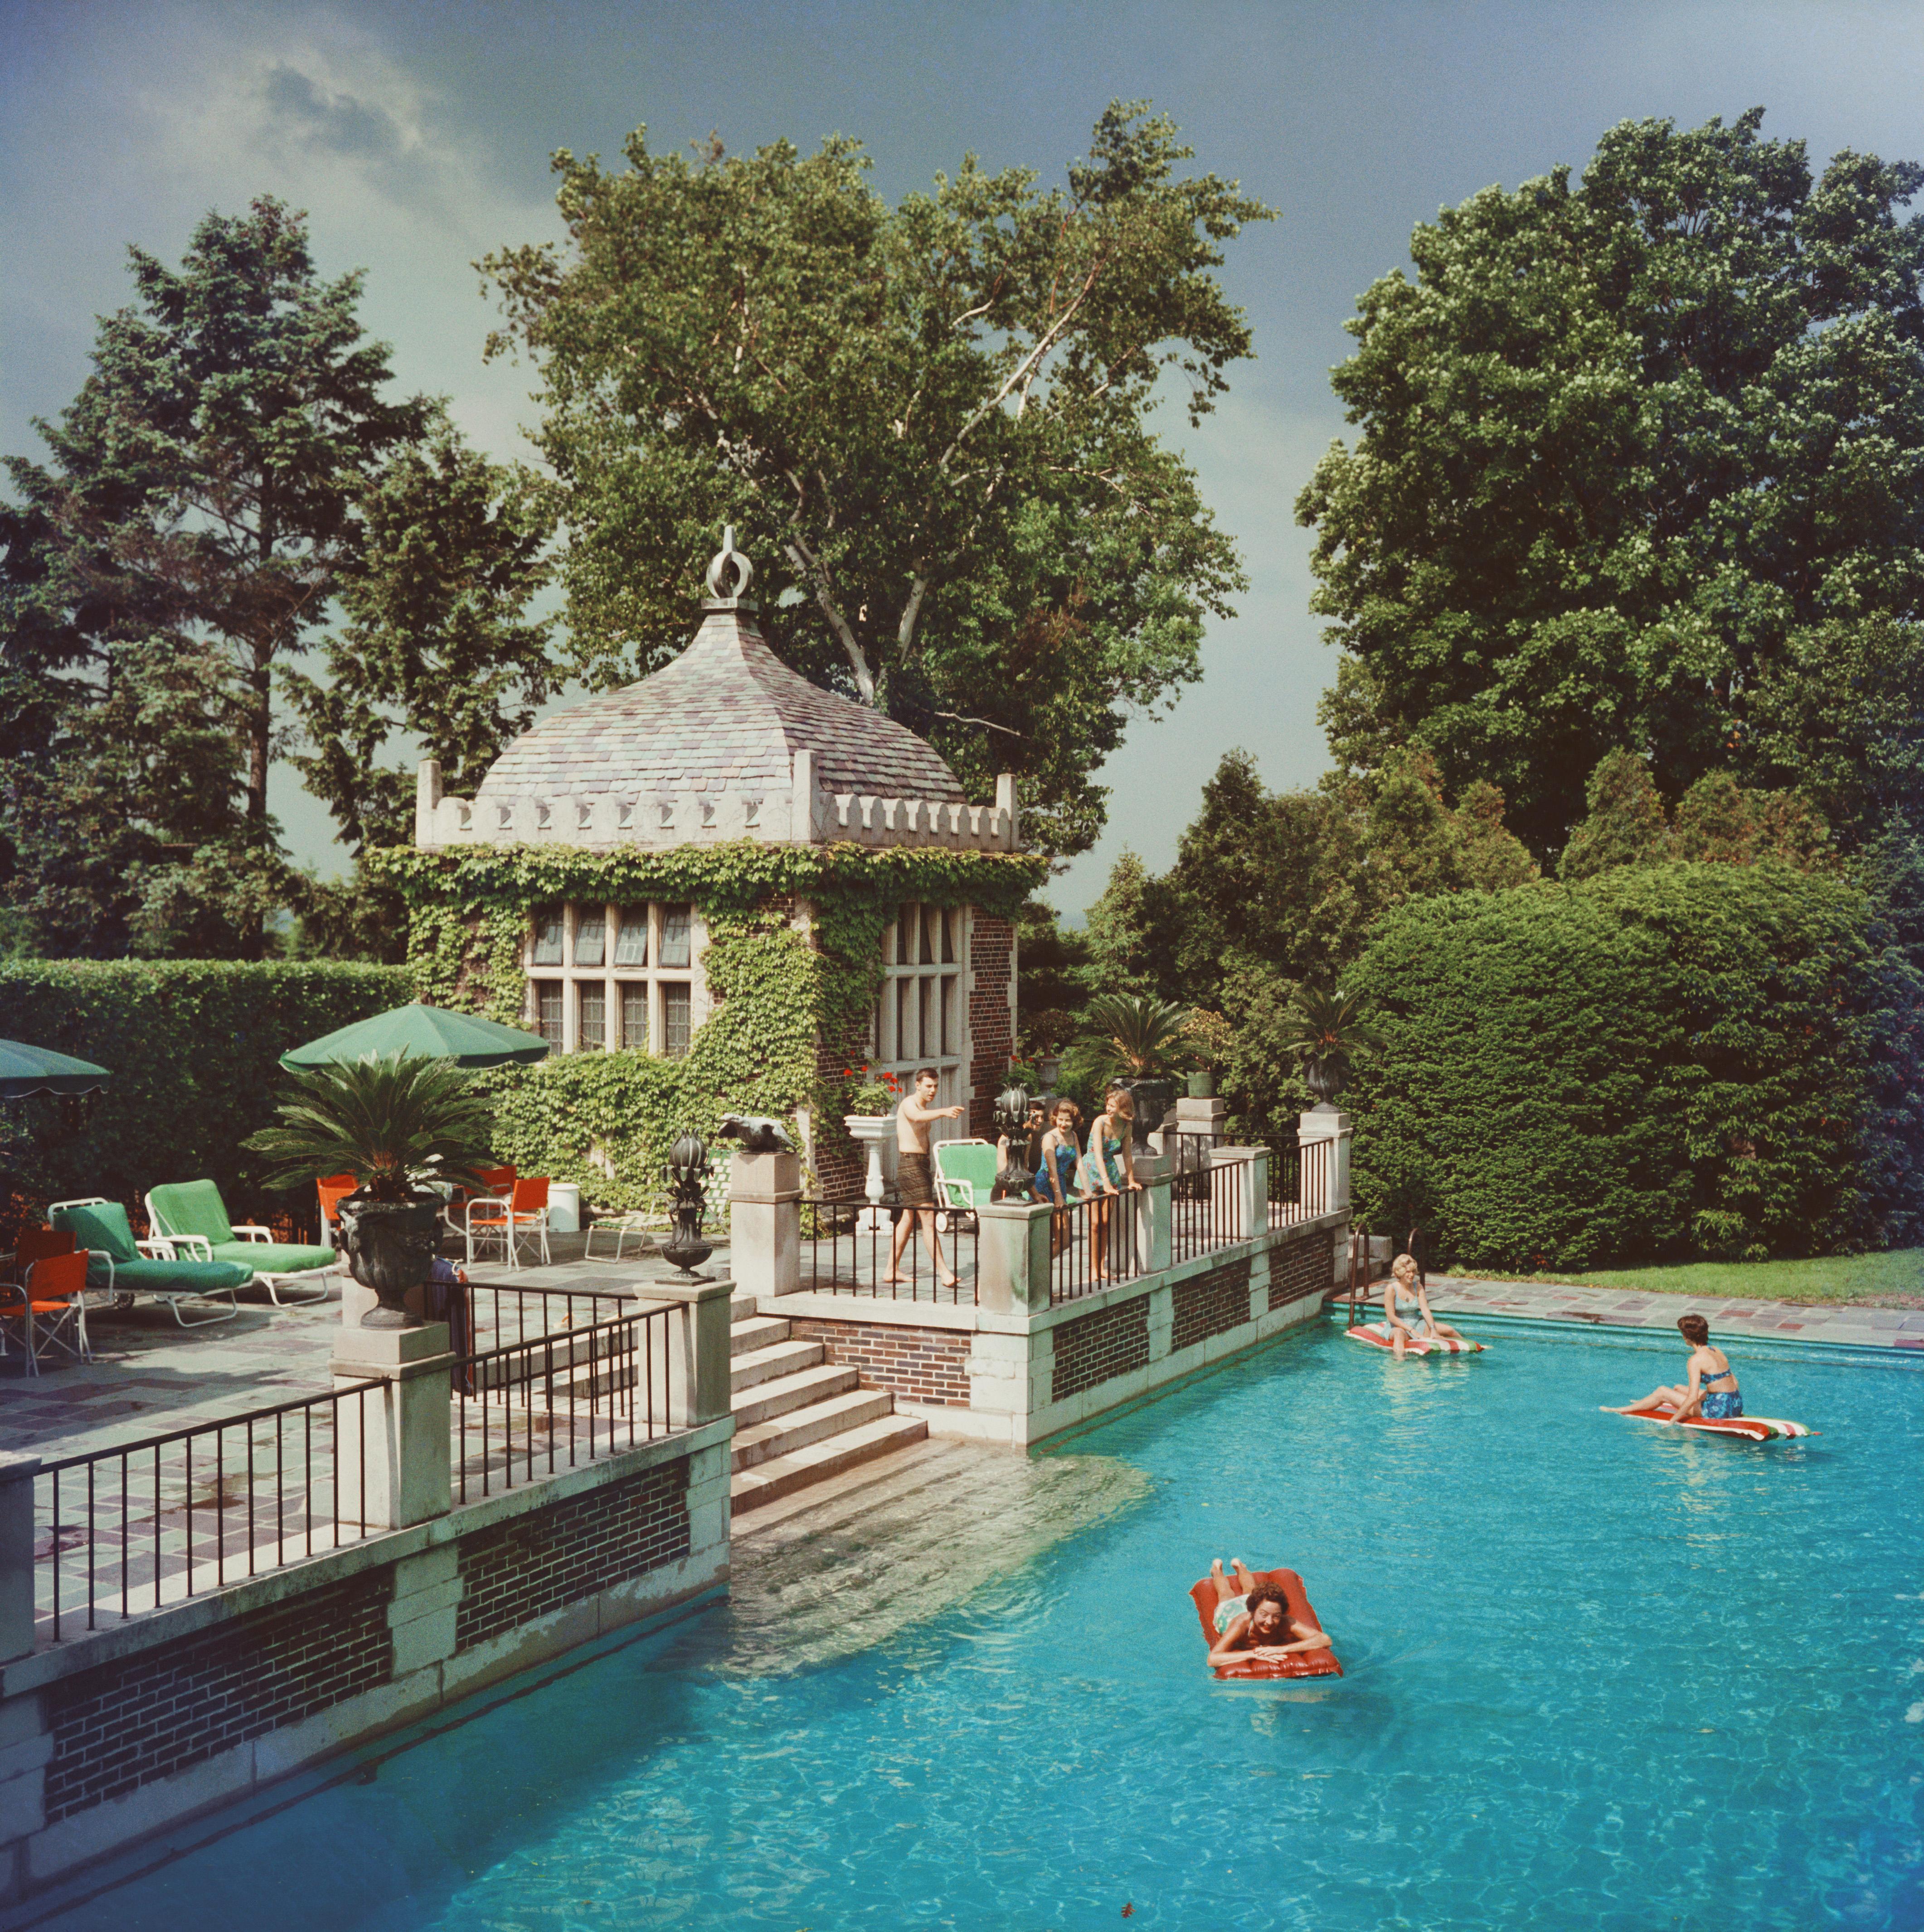 um 1960: Mrs. A. Watson Armour III (Jean Schweppe) mit Freunden und Familie am Pool ihres Anwesens in Lake Forest, Illinois. Eine wunderbare Zeit - Slim Aarons

Schlanke Aarons
Familienbad
Chromogener Lambda-Druck
Später gedruckt
Slim Aarons Estate